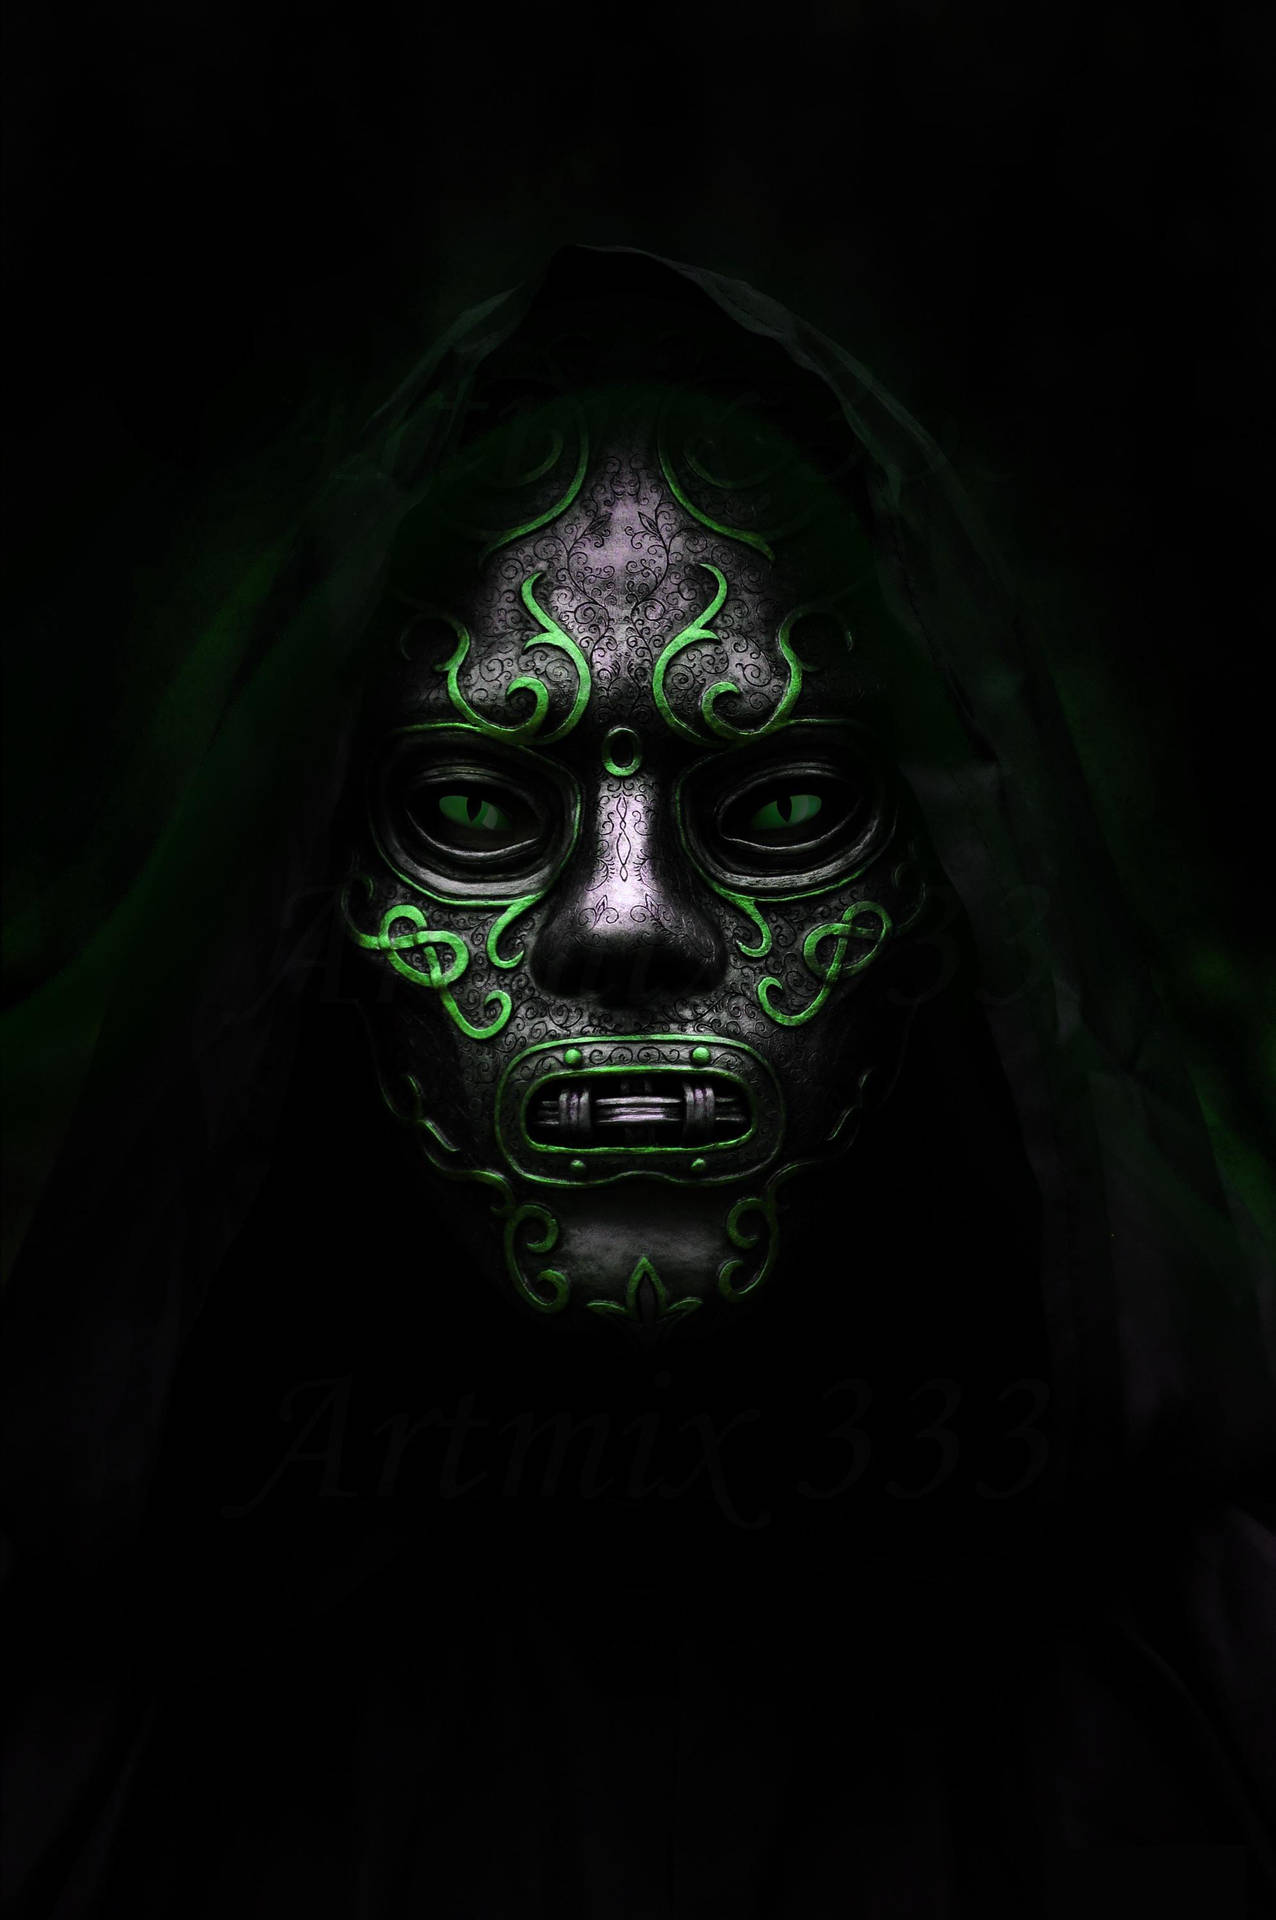 Doctor Doom-Inspired Mask Wallpaper